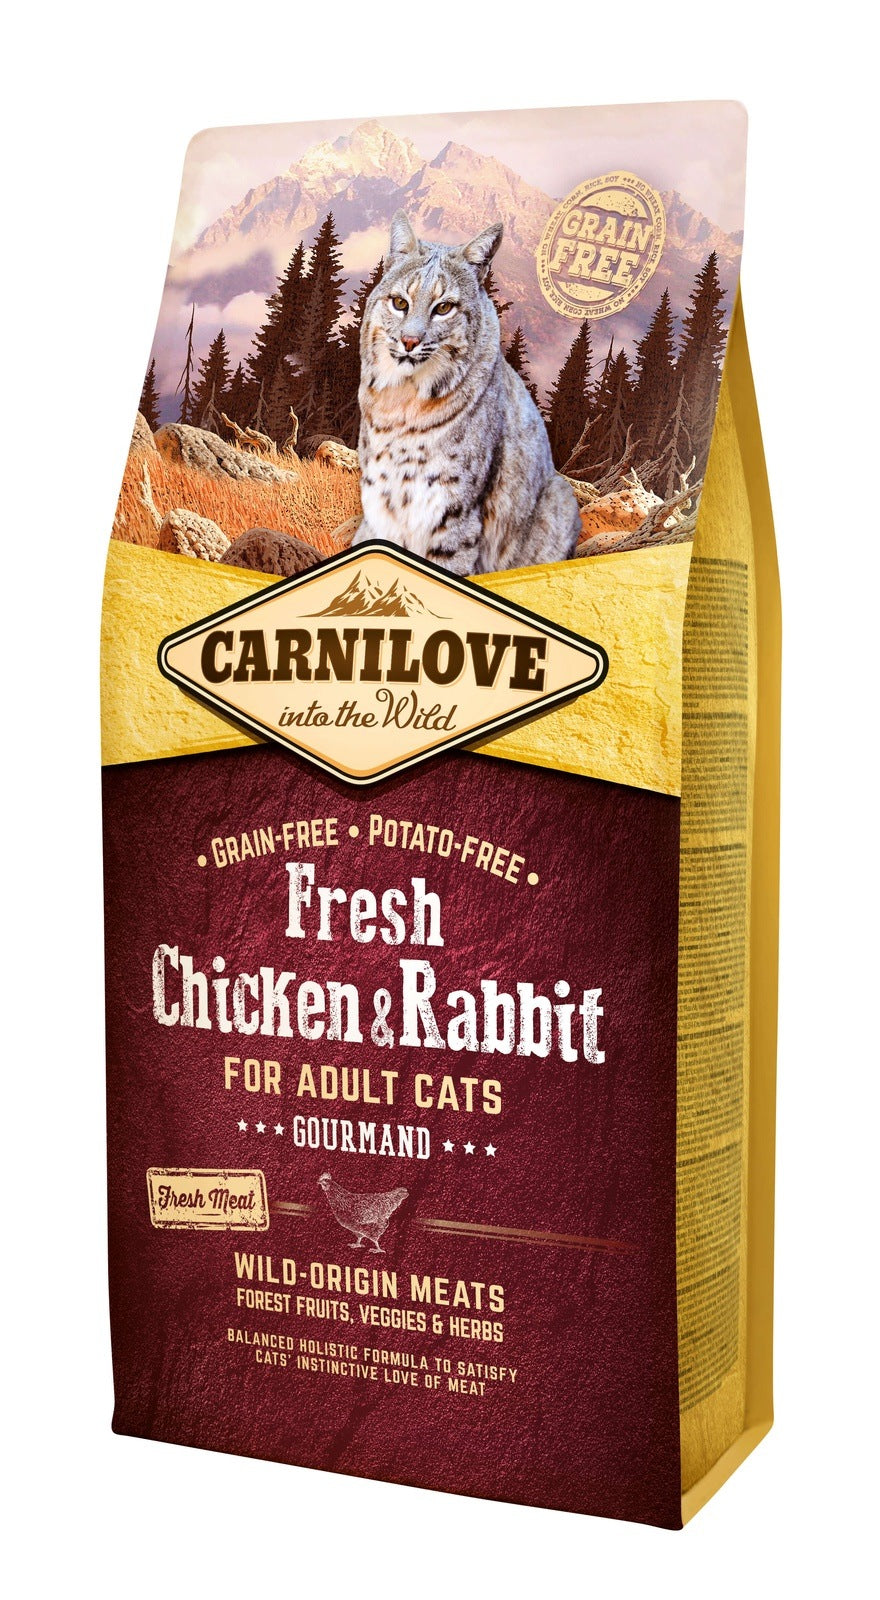 Artikel mit dem Namen Carnilove Cat Adult Fresh - Gourmand im Shop von zoo.de , dem Onlineshop für nachhaltiges Hundefutter und Katzenfutter.